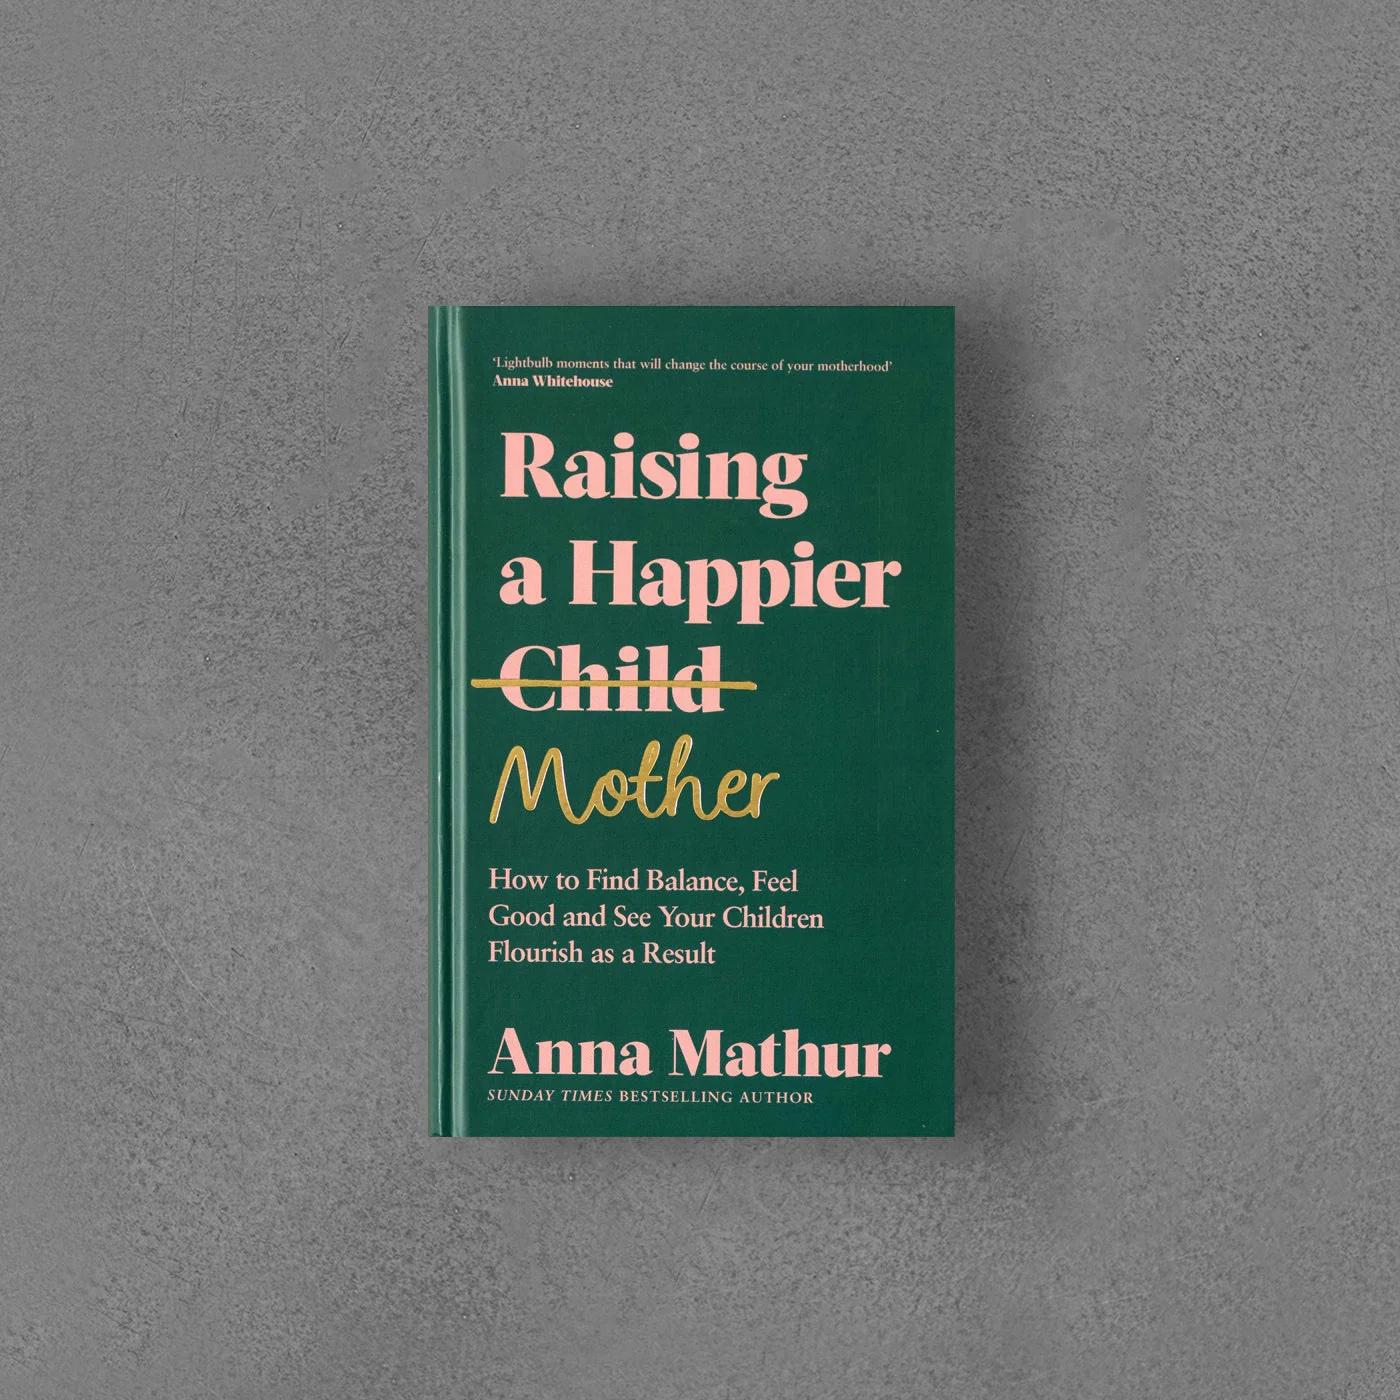 Anna Mathur- Raisning a happier mother